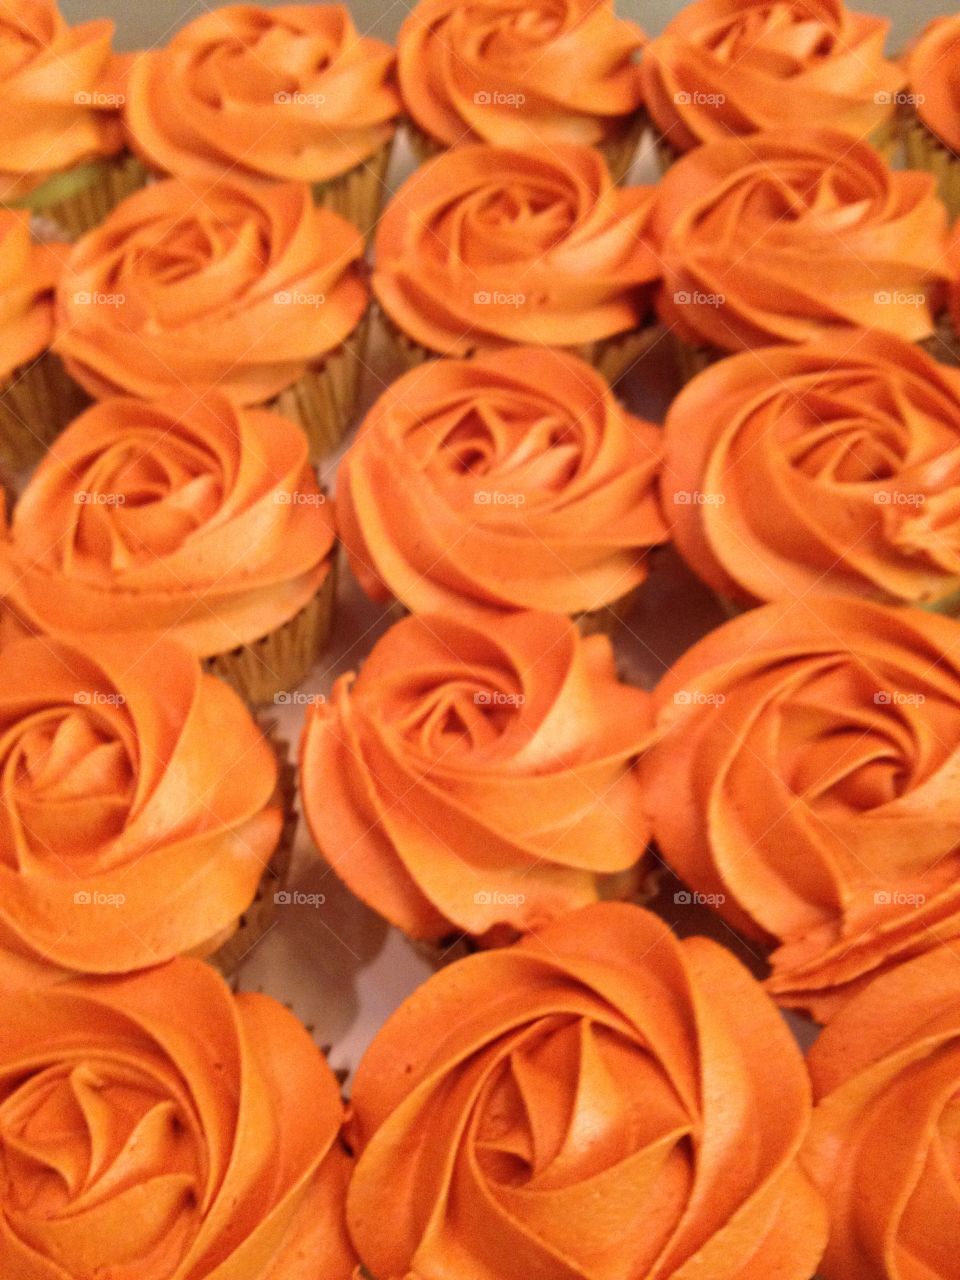 Orange rosette cupcakes
